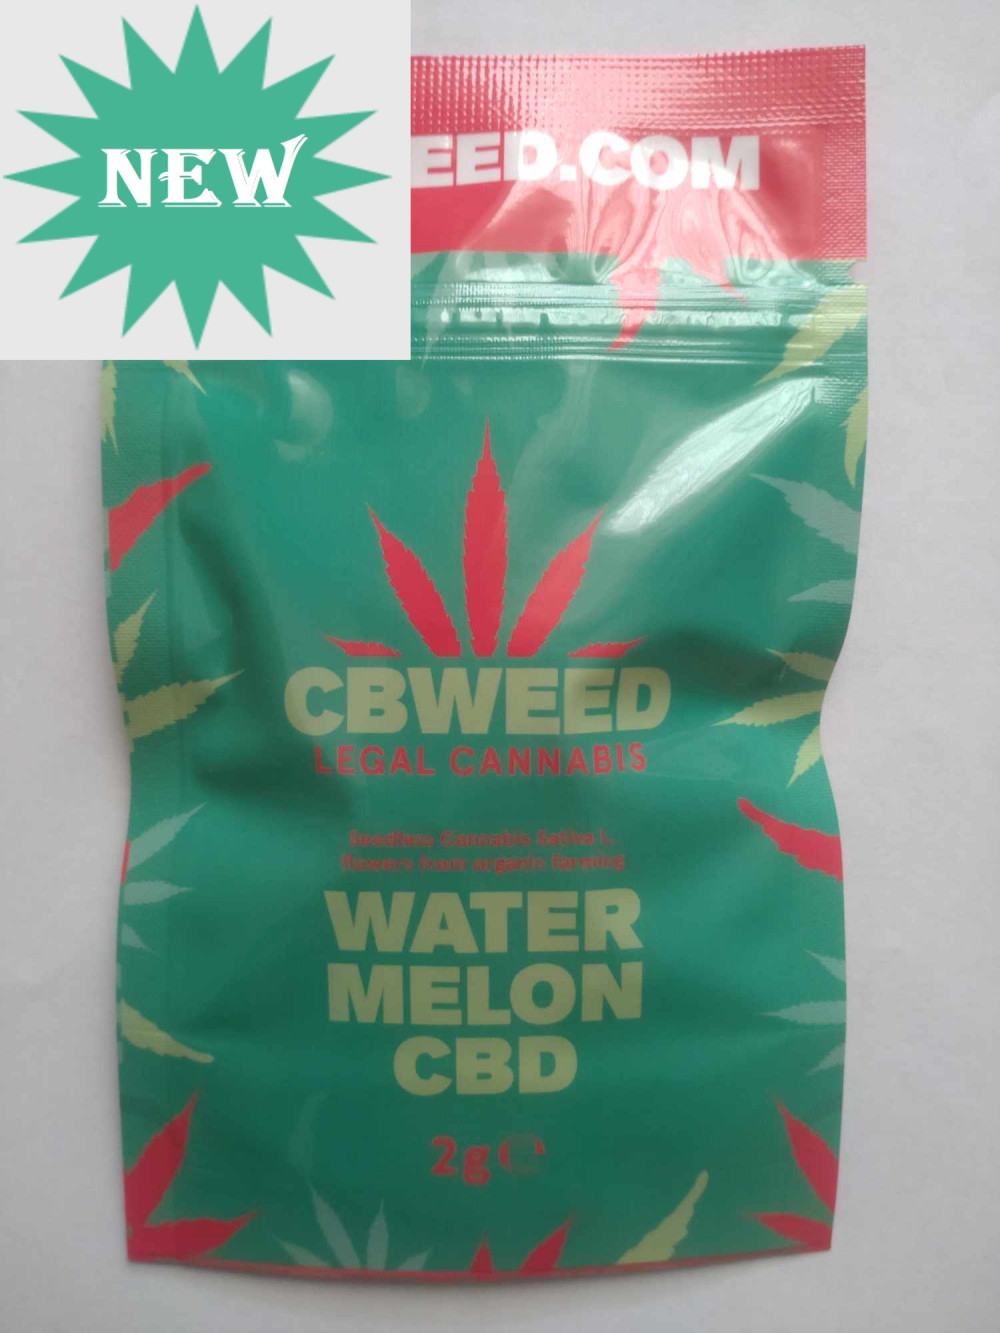 Watermelon 2g /CBD cannabis/